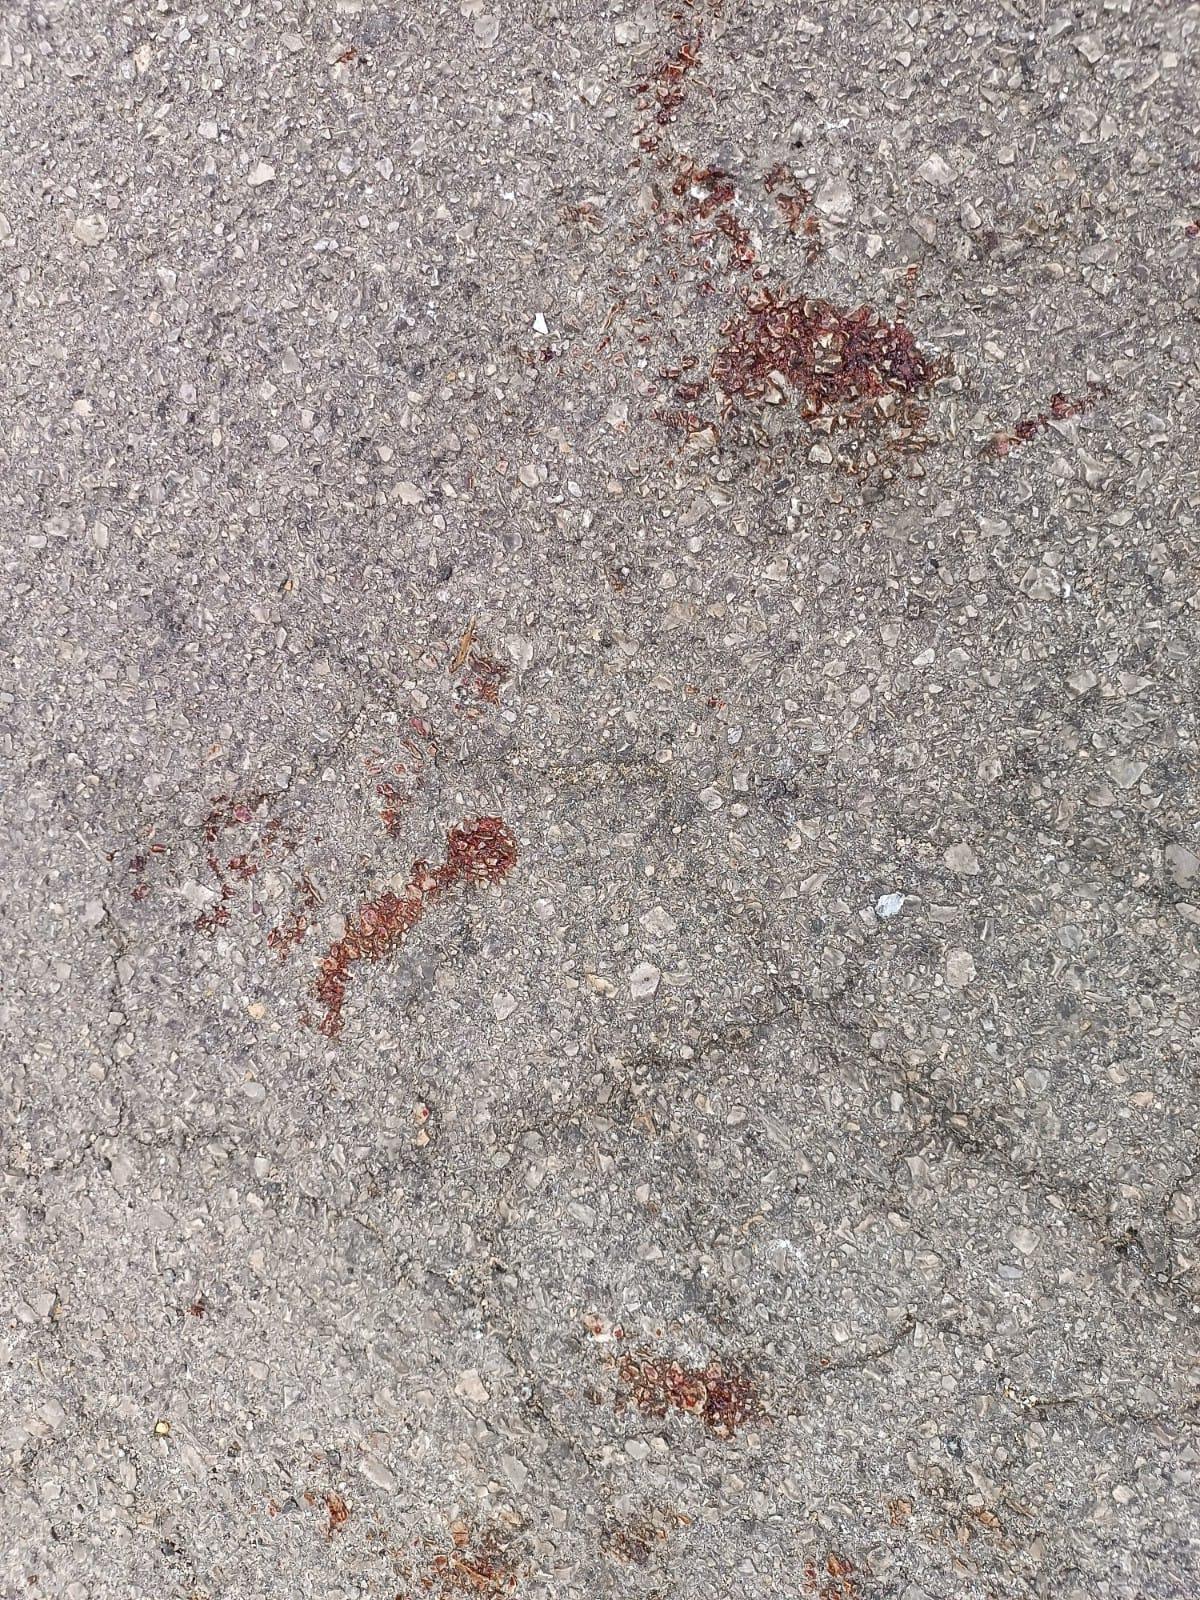 Restos de sangre en la calle Filadora de Sóller tras el apuñalamiento.